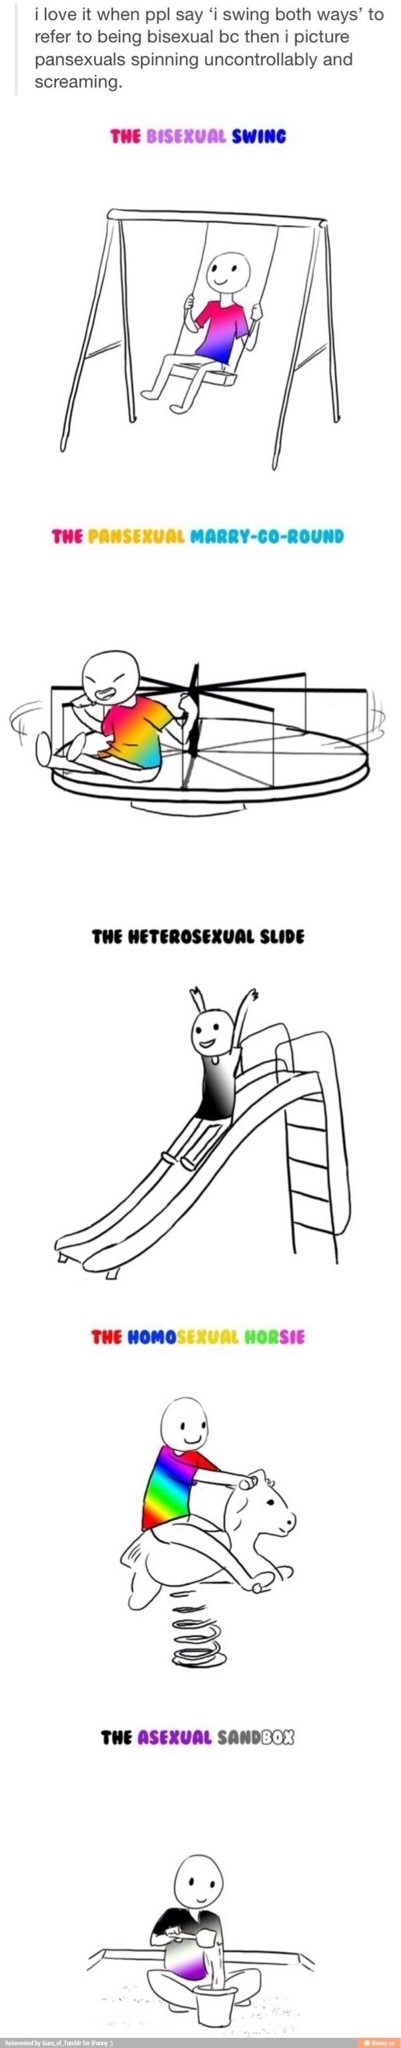 the sexual orientation park - meme